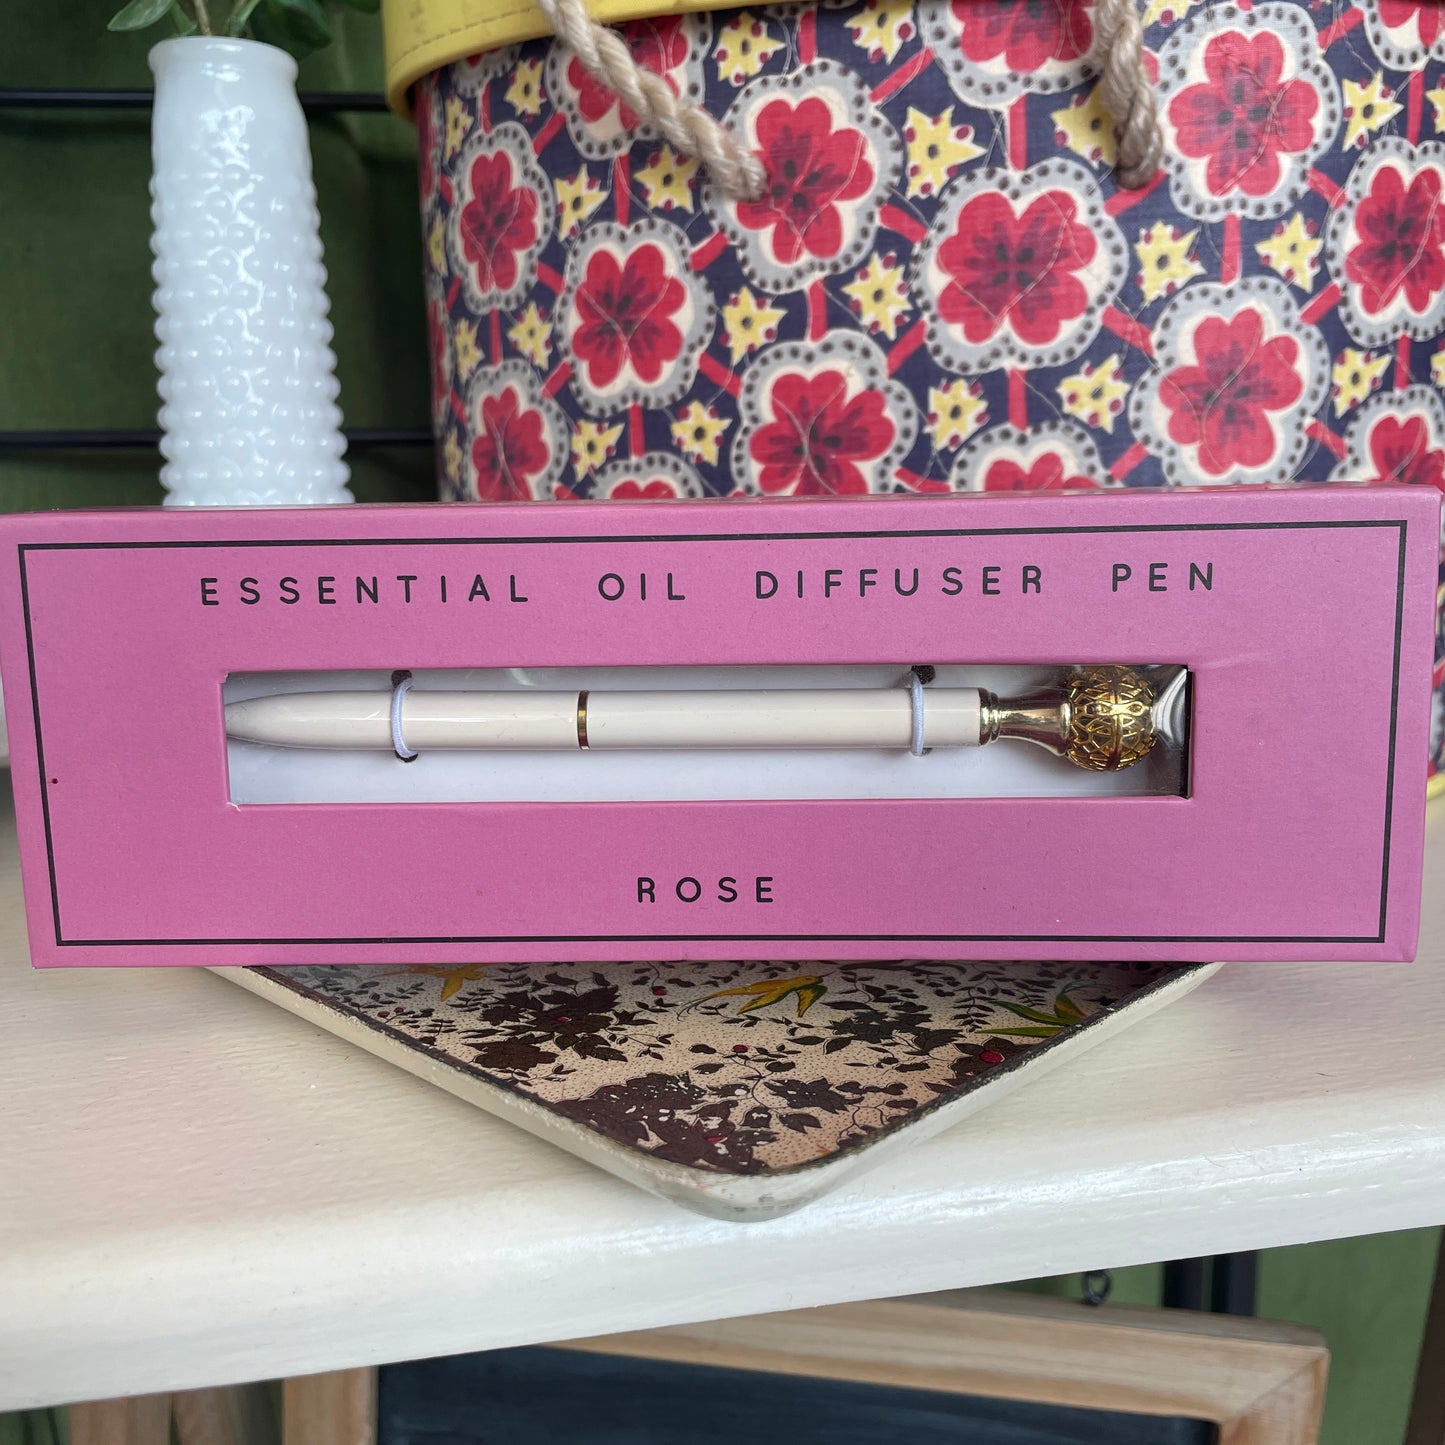 Rose Essential Oil Diffuser Pen